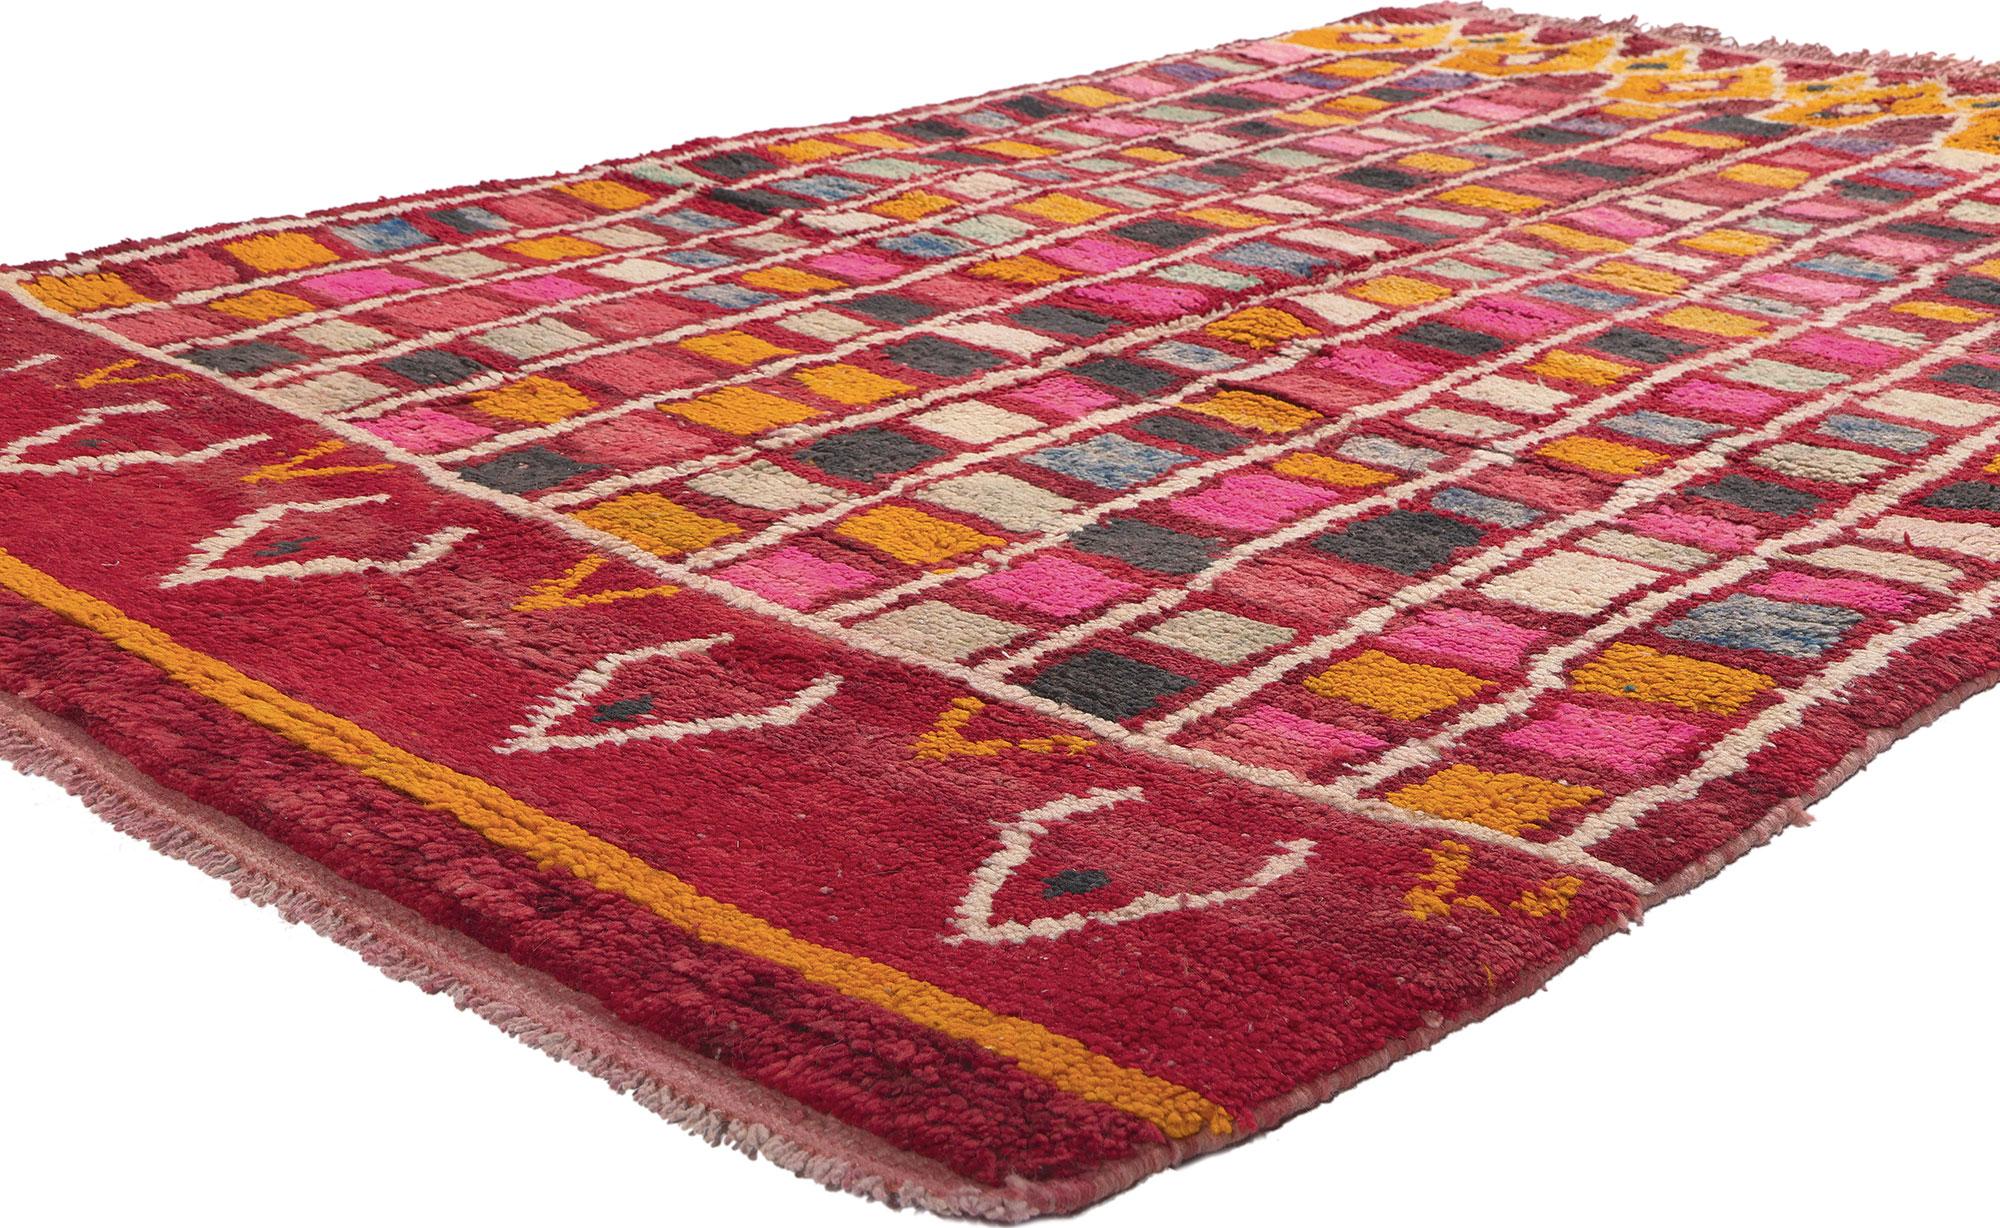 20259 Tapis marocain Vintage Rehamna, 04'11 x 07'10. Des plaines centrales de Rehamna, à l'est de Marrakech, émerge un tapis qui défie les attentes avec ses motifs colorés et imprévisibles. Embrassant un style cubiste abstrait fusionné avec des